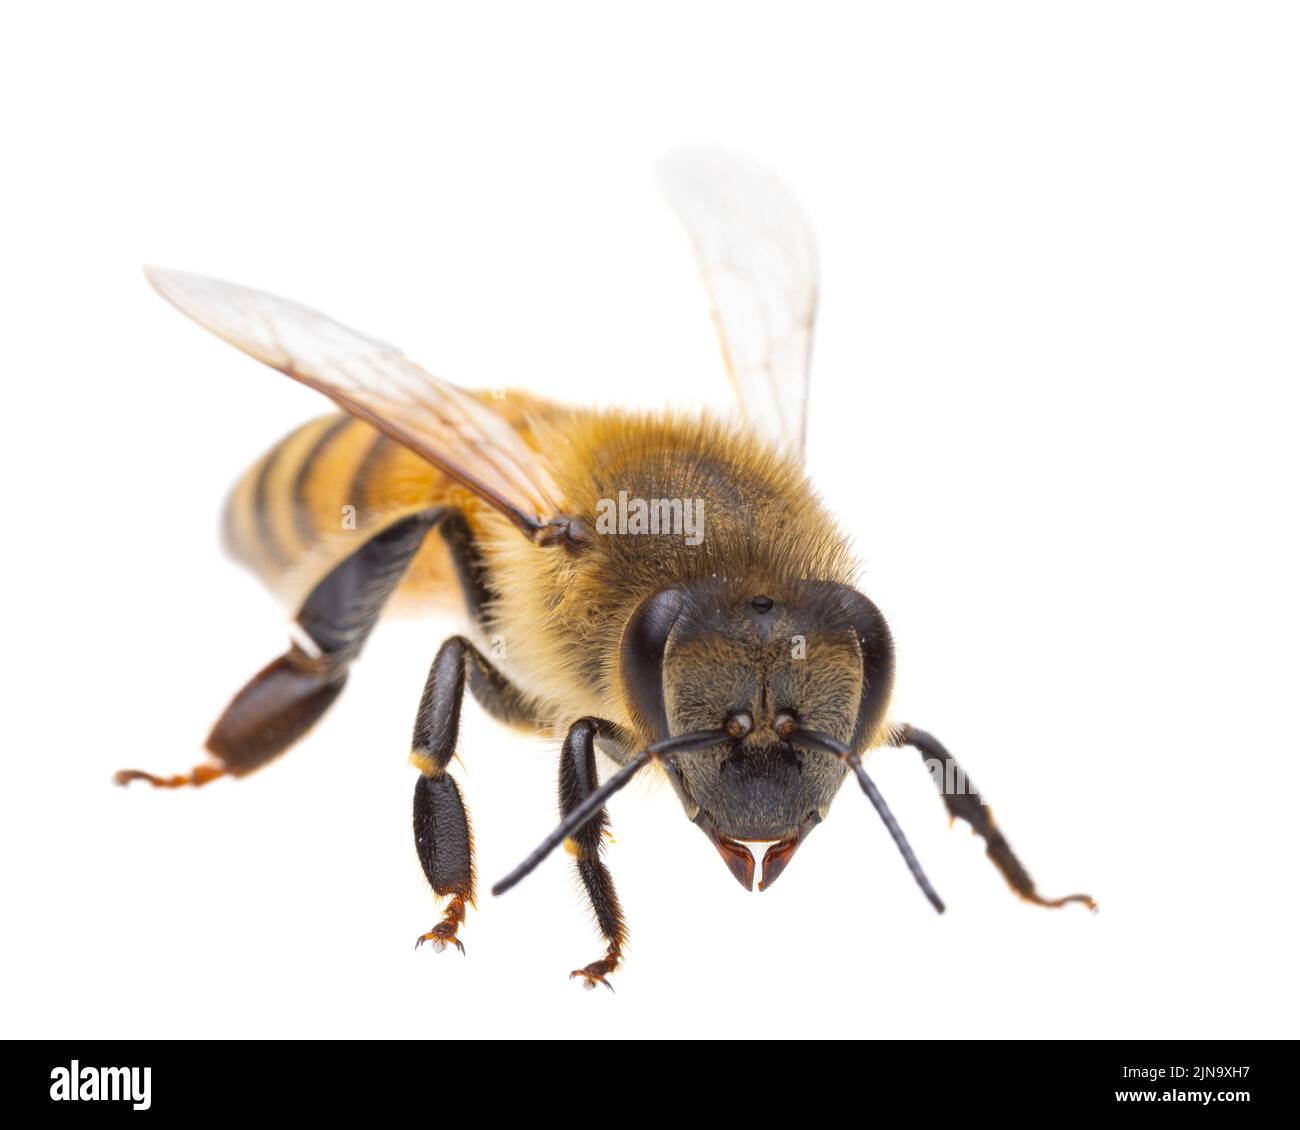 Insectes d'europe - abeilles: Vue latérale macro de l'abeille européenne ( APIs mellifera) isolé sur fond blanc - tête au spectateur Banque D'Images